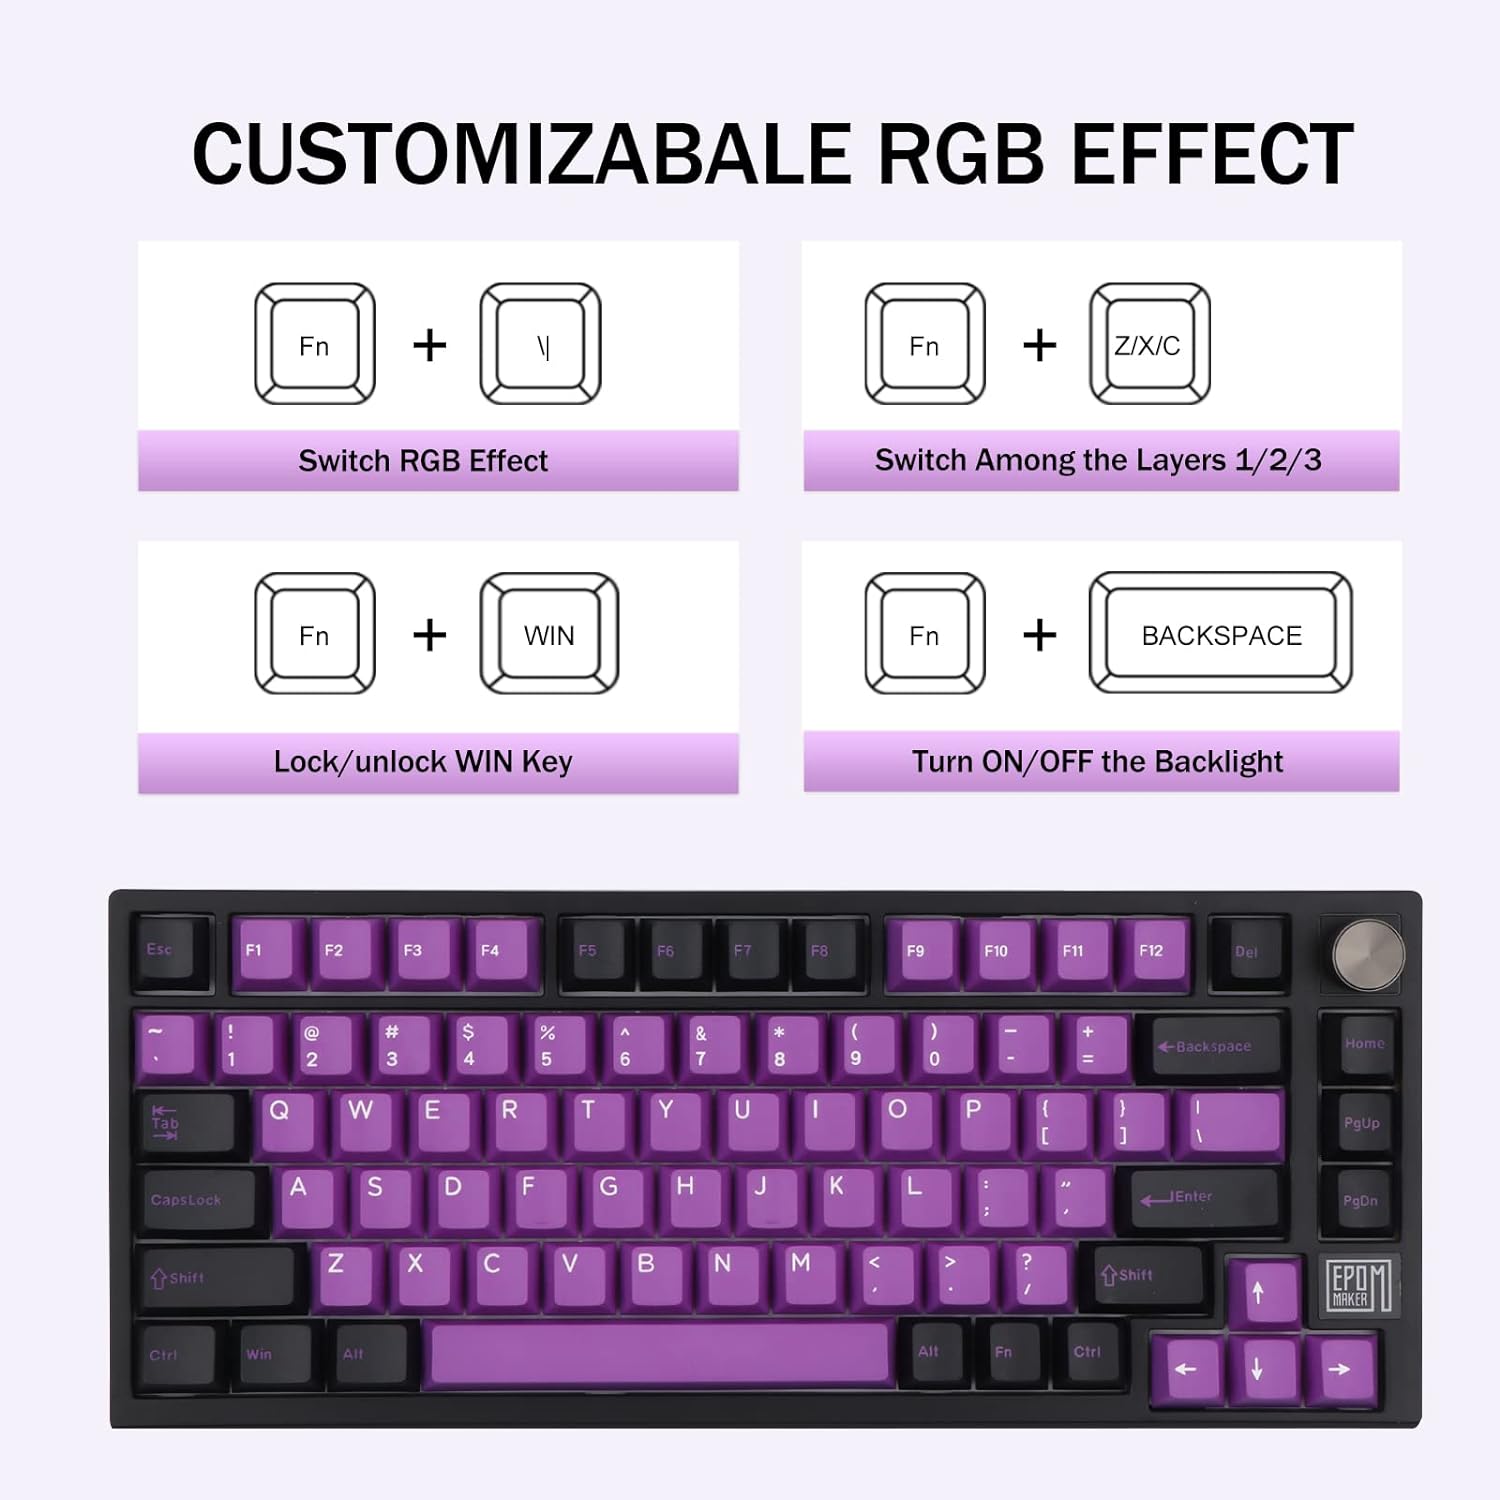 EPOMAKER TH80 SE Board 75% Mechanical Keyboard, NKRO Hot-Swap RGB Triple Mode Gaming Keyboard with Poron/EVA Foam, Programmable, 4000mAh Battery for E-Sport/Win/Mac(Black Purple, Gateron Pro Black)